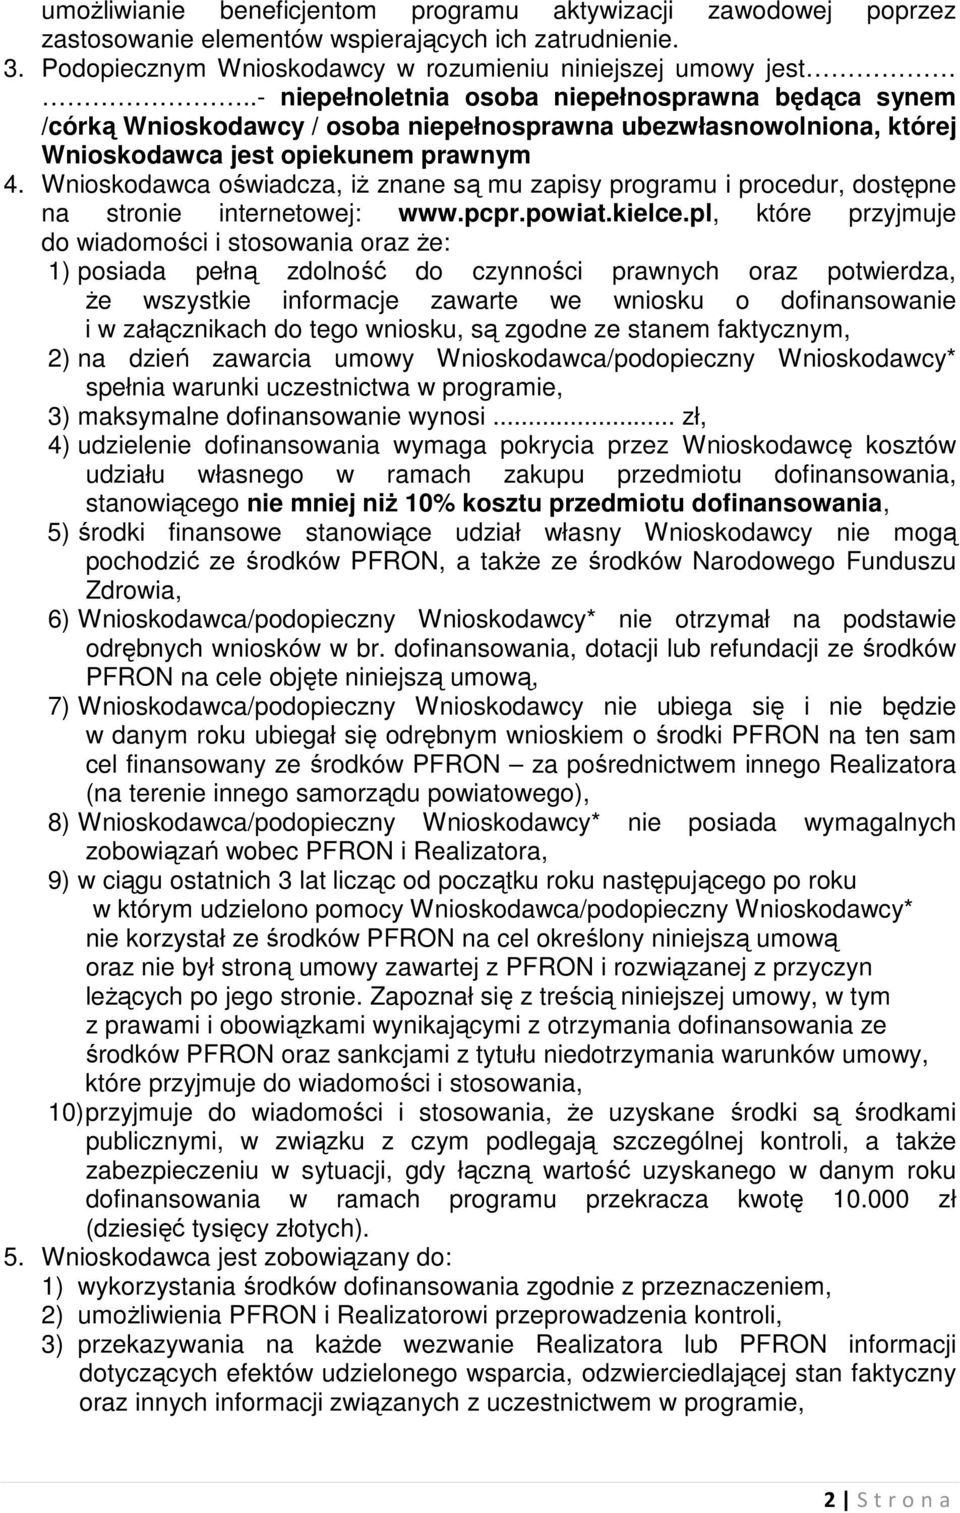 Wnioskodawca oświadcza, iż znane są mu zapisy programu i procedur, dostępne na stronie internetowej: www.pcpr.powiat.kielce.